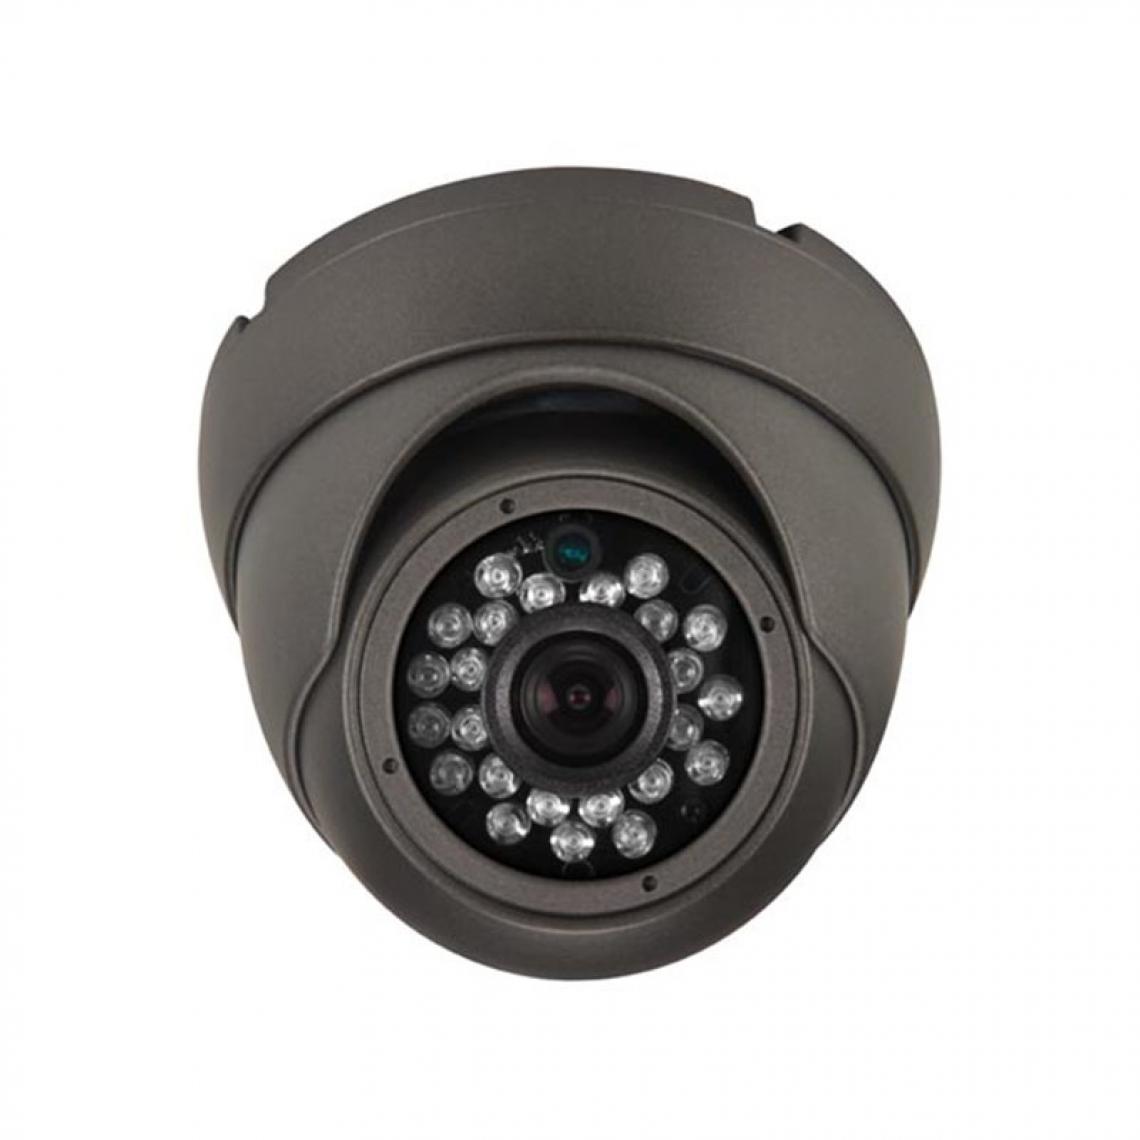 Perel - Caméra Multi Protocoles – Hd-Tvi / Cvi / Ahd / Analogique – Extérieur – Dôme - 1080P - Caméra de surveillance connectée